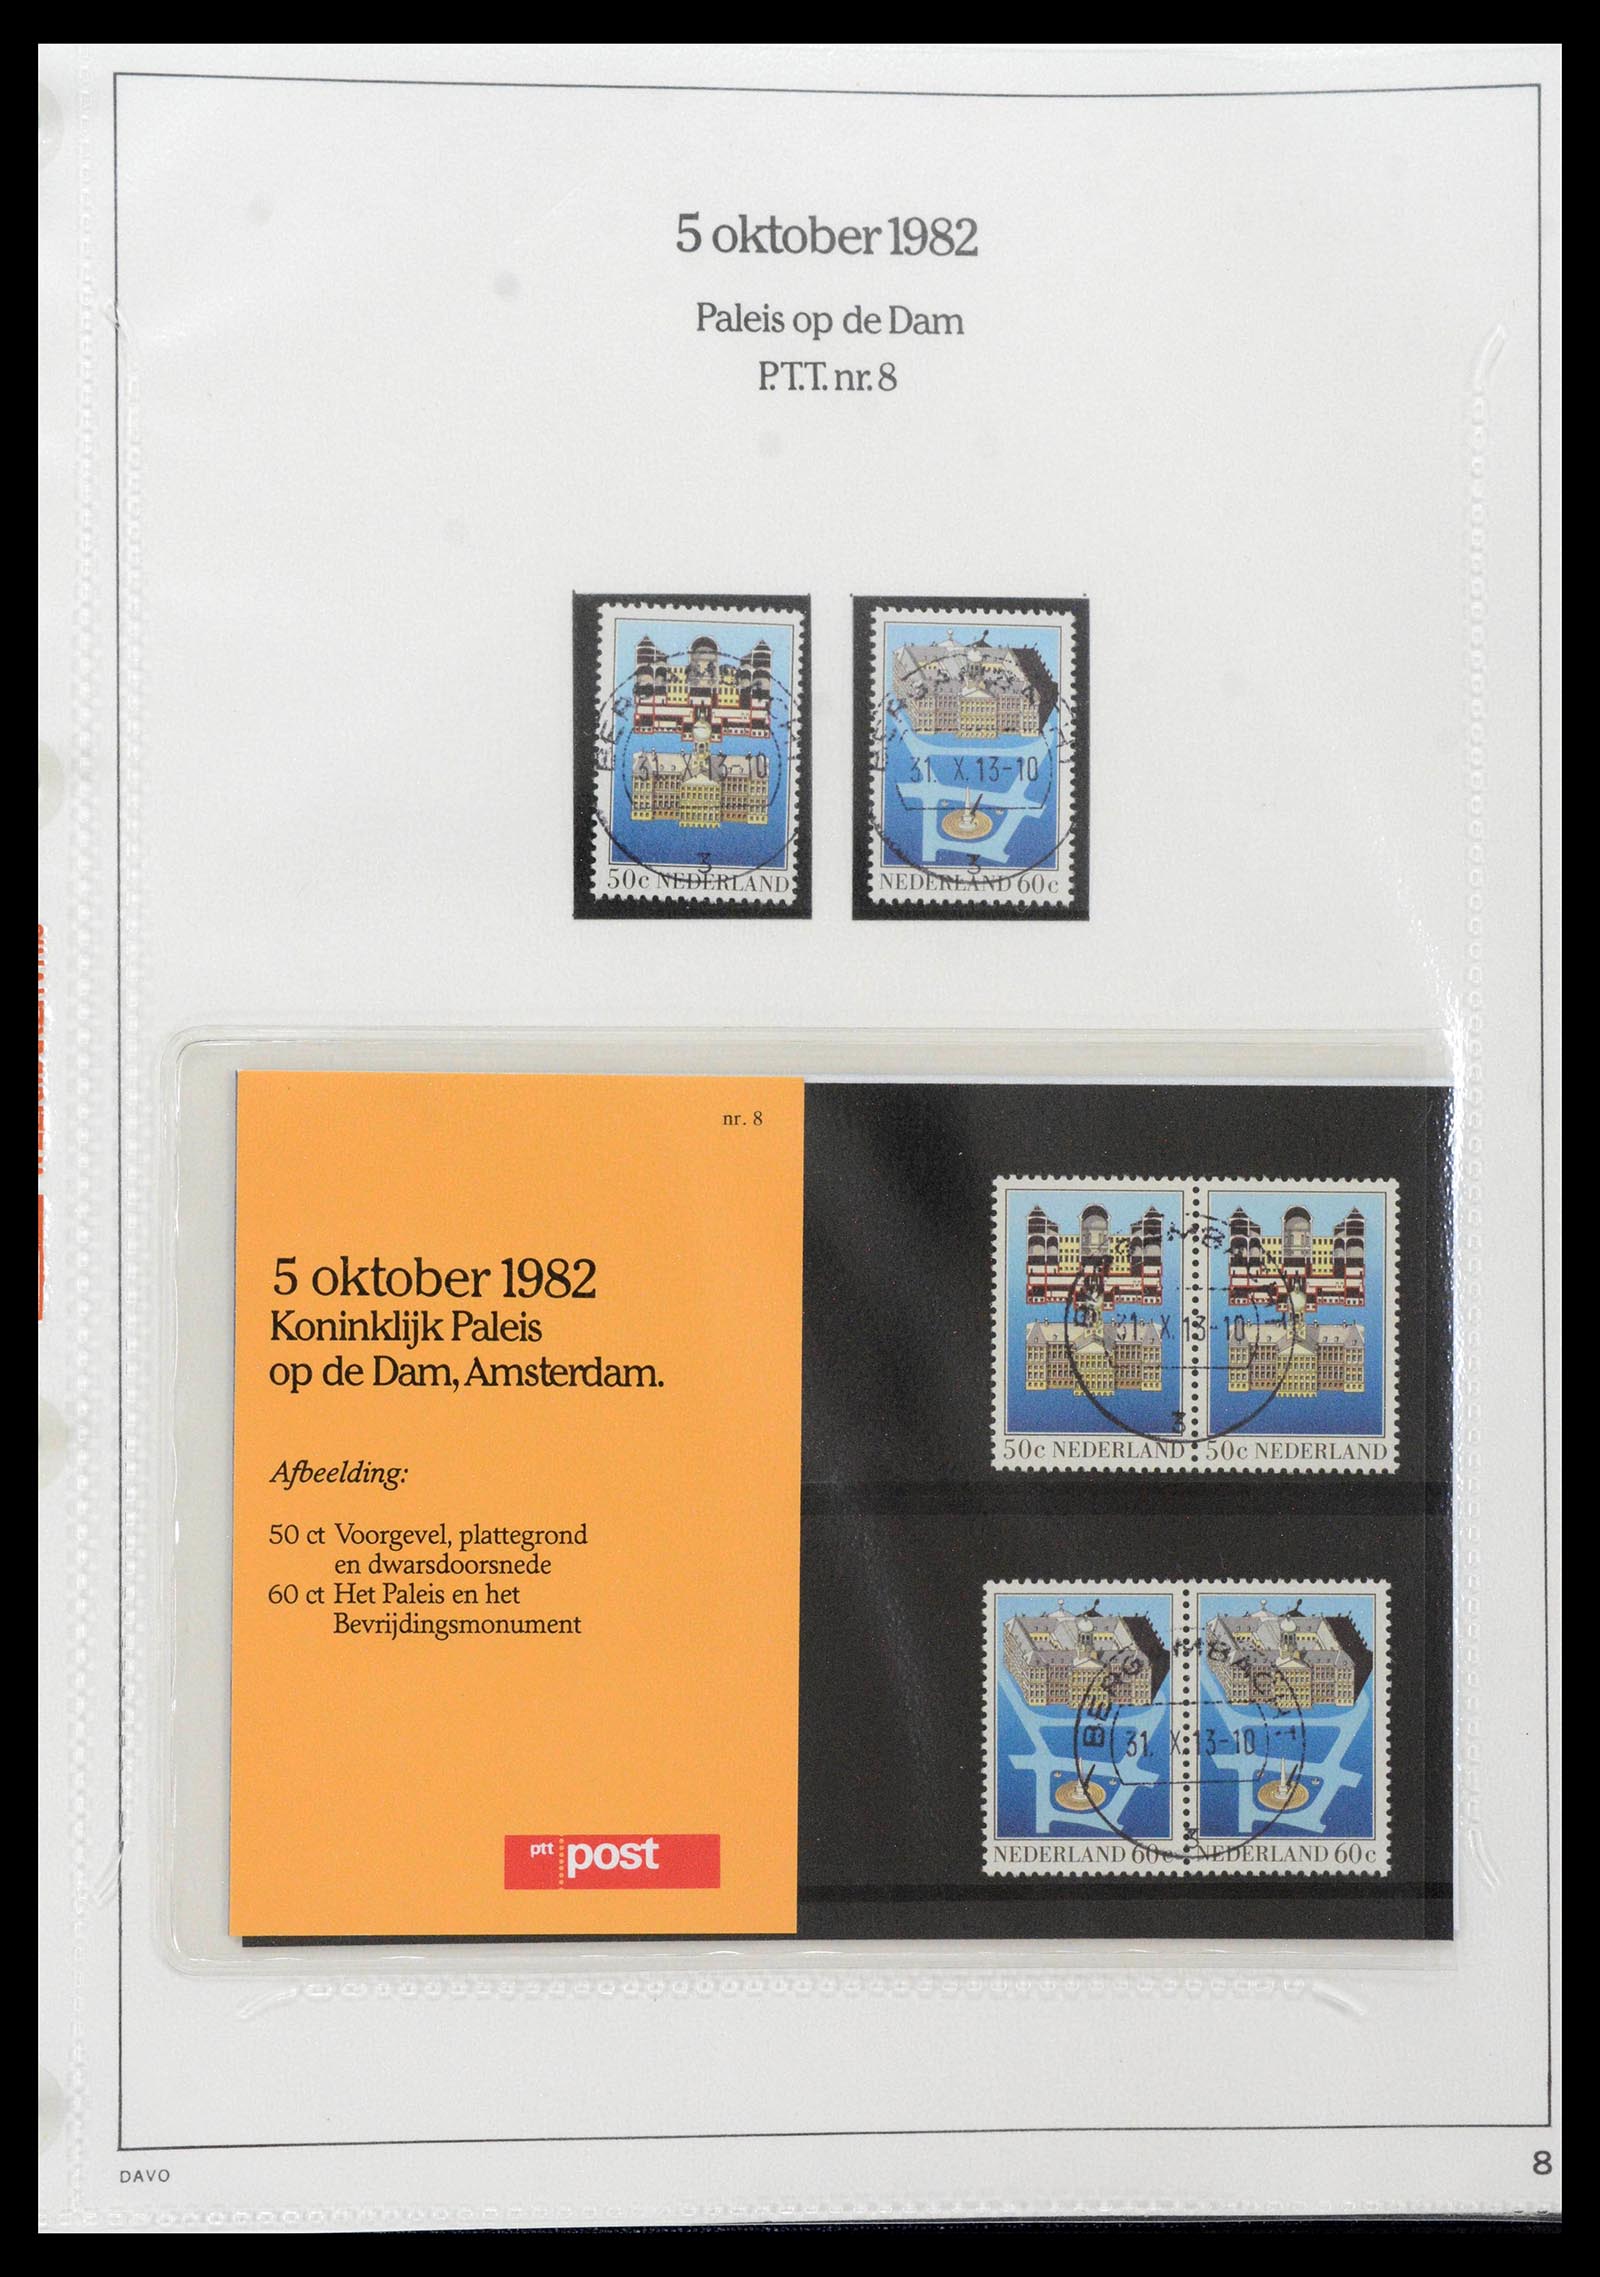 39121 0008 - Stamp collection 39121 Netherlands presentationpacks 1982-2001.